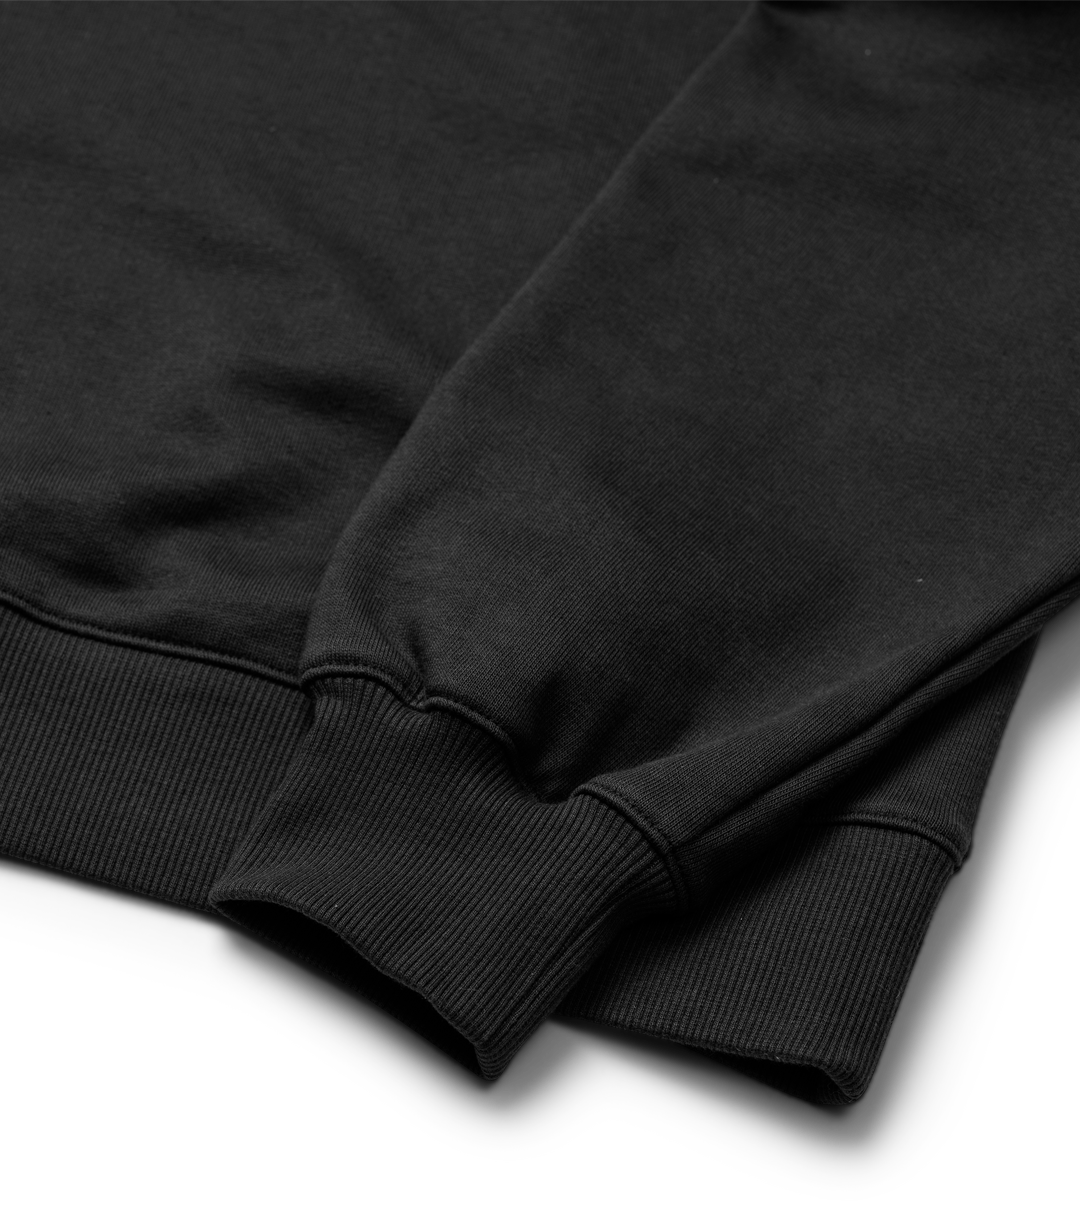 6 SIEGE - Jäger Black Sweatshirt